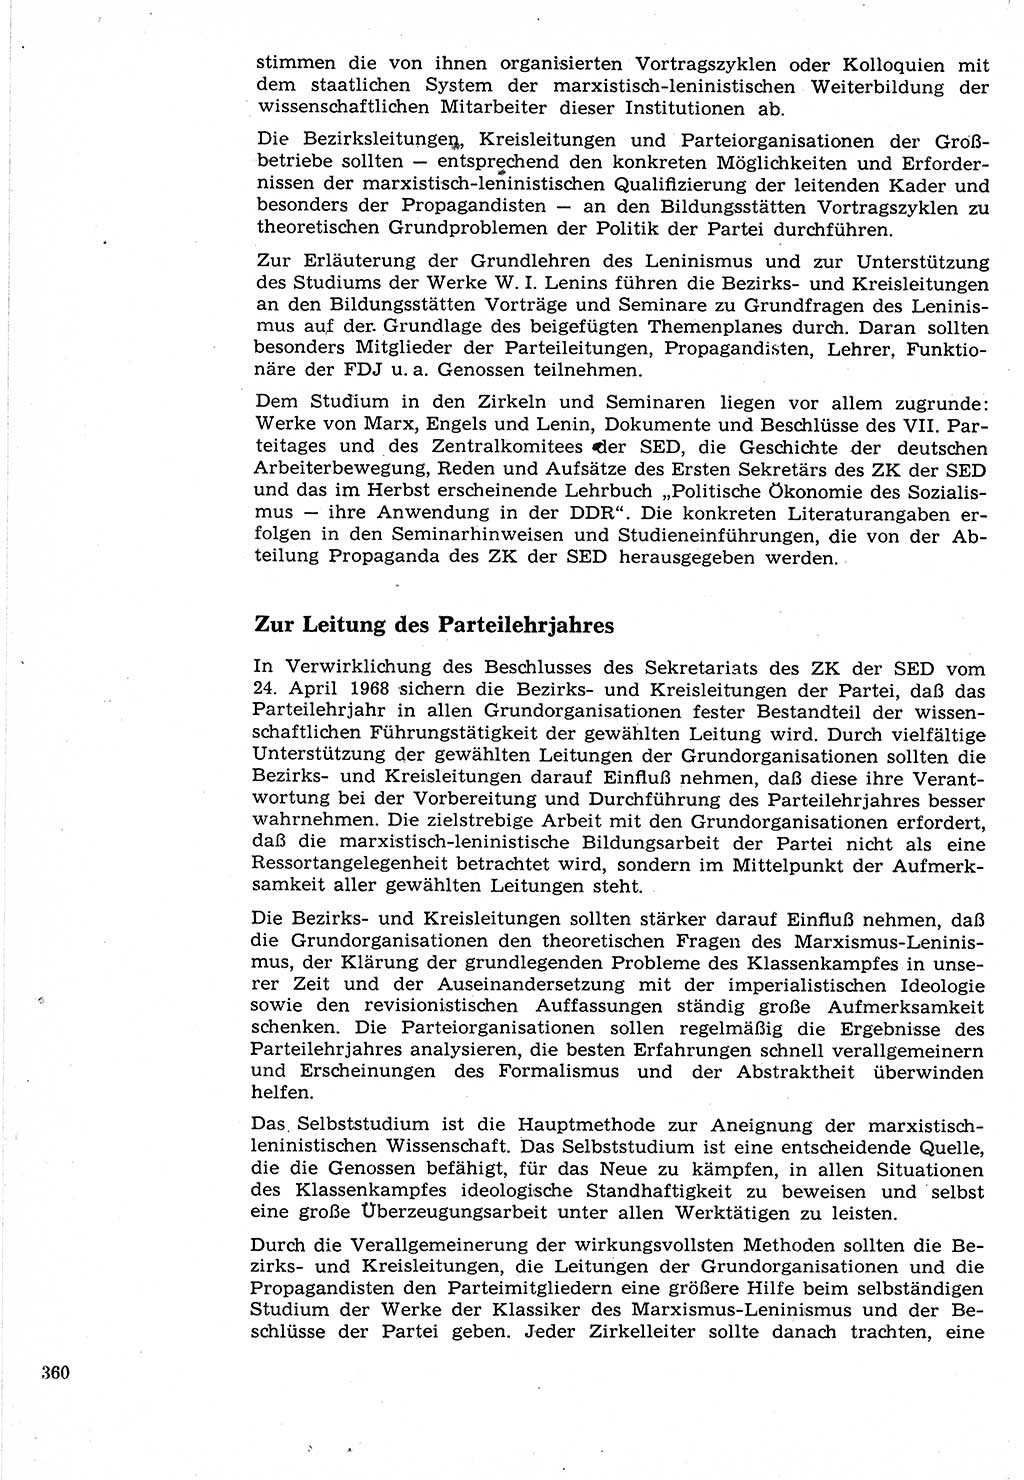 Neuer Weg (NW), Organ des Zentralkomitees (ZK) der SED (Sozialistische Einheitspartei Deutschlands) für Fragen des Parteilebens, 24. Jahrgang [Deutsche Demokratische Republik (DDR)] 1969, Seite 360 (NW ZK SED DDR 1969, S. 360)